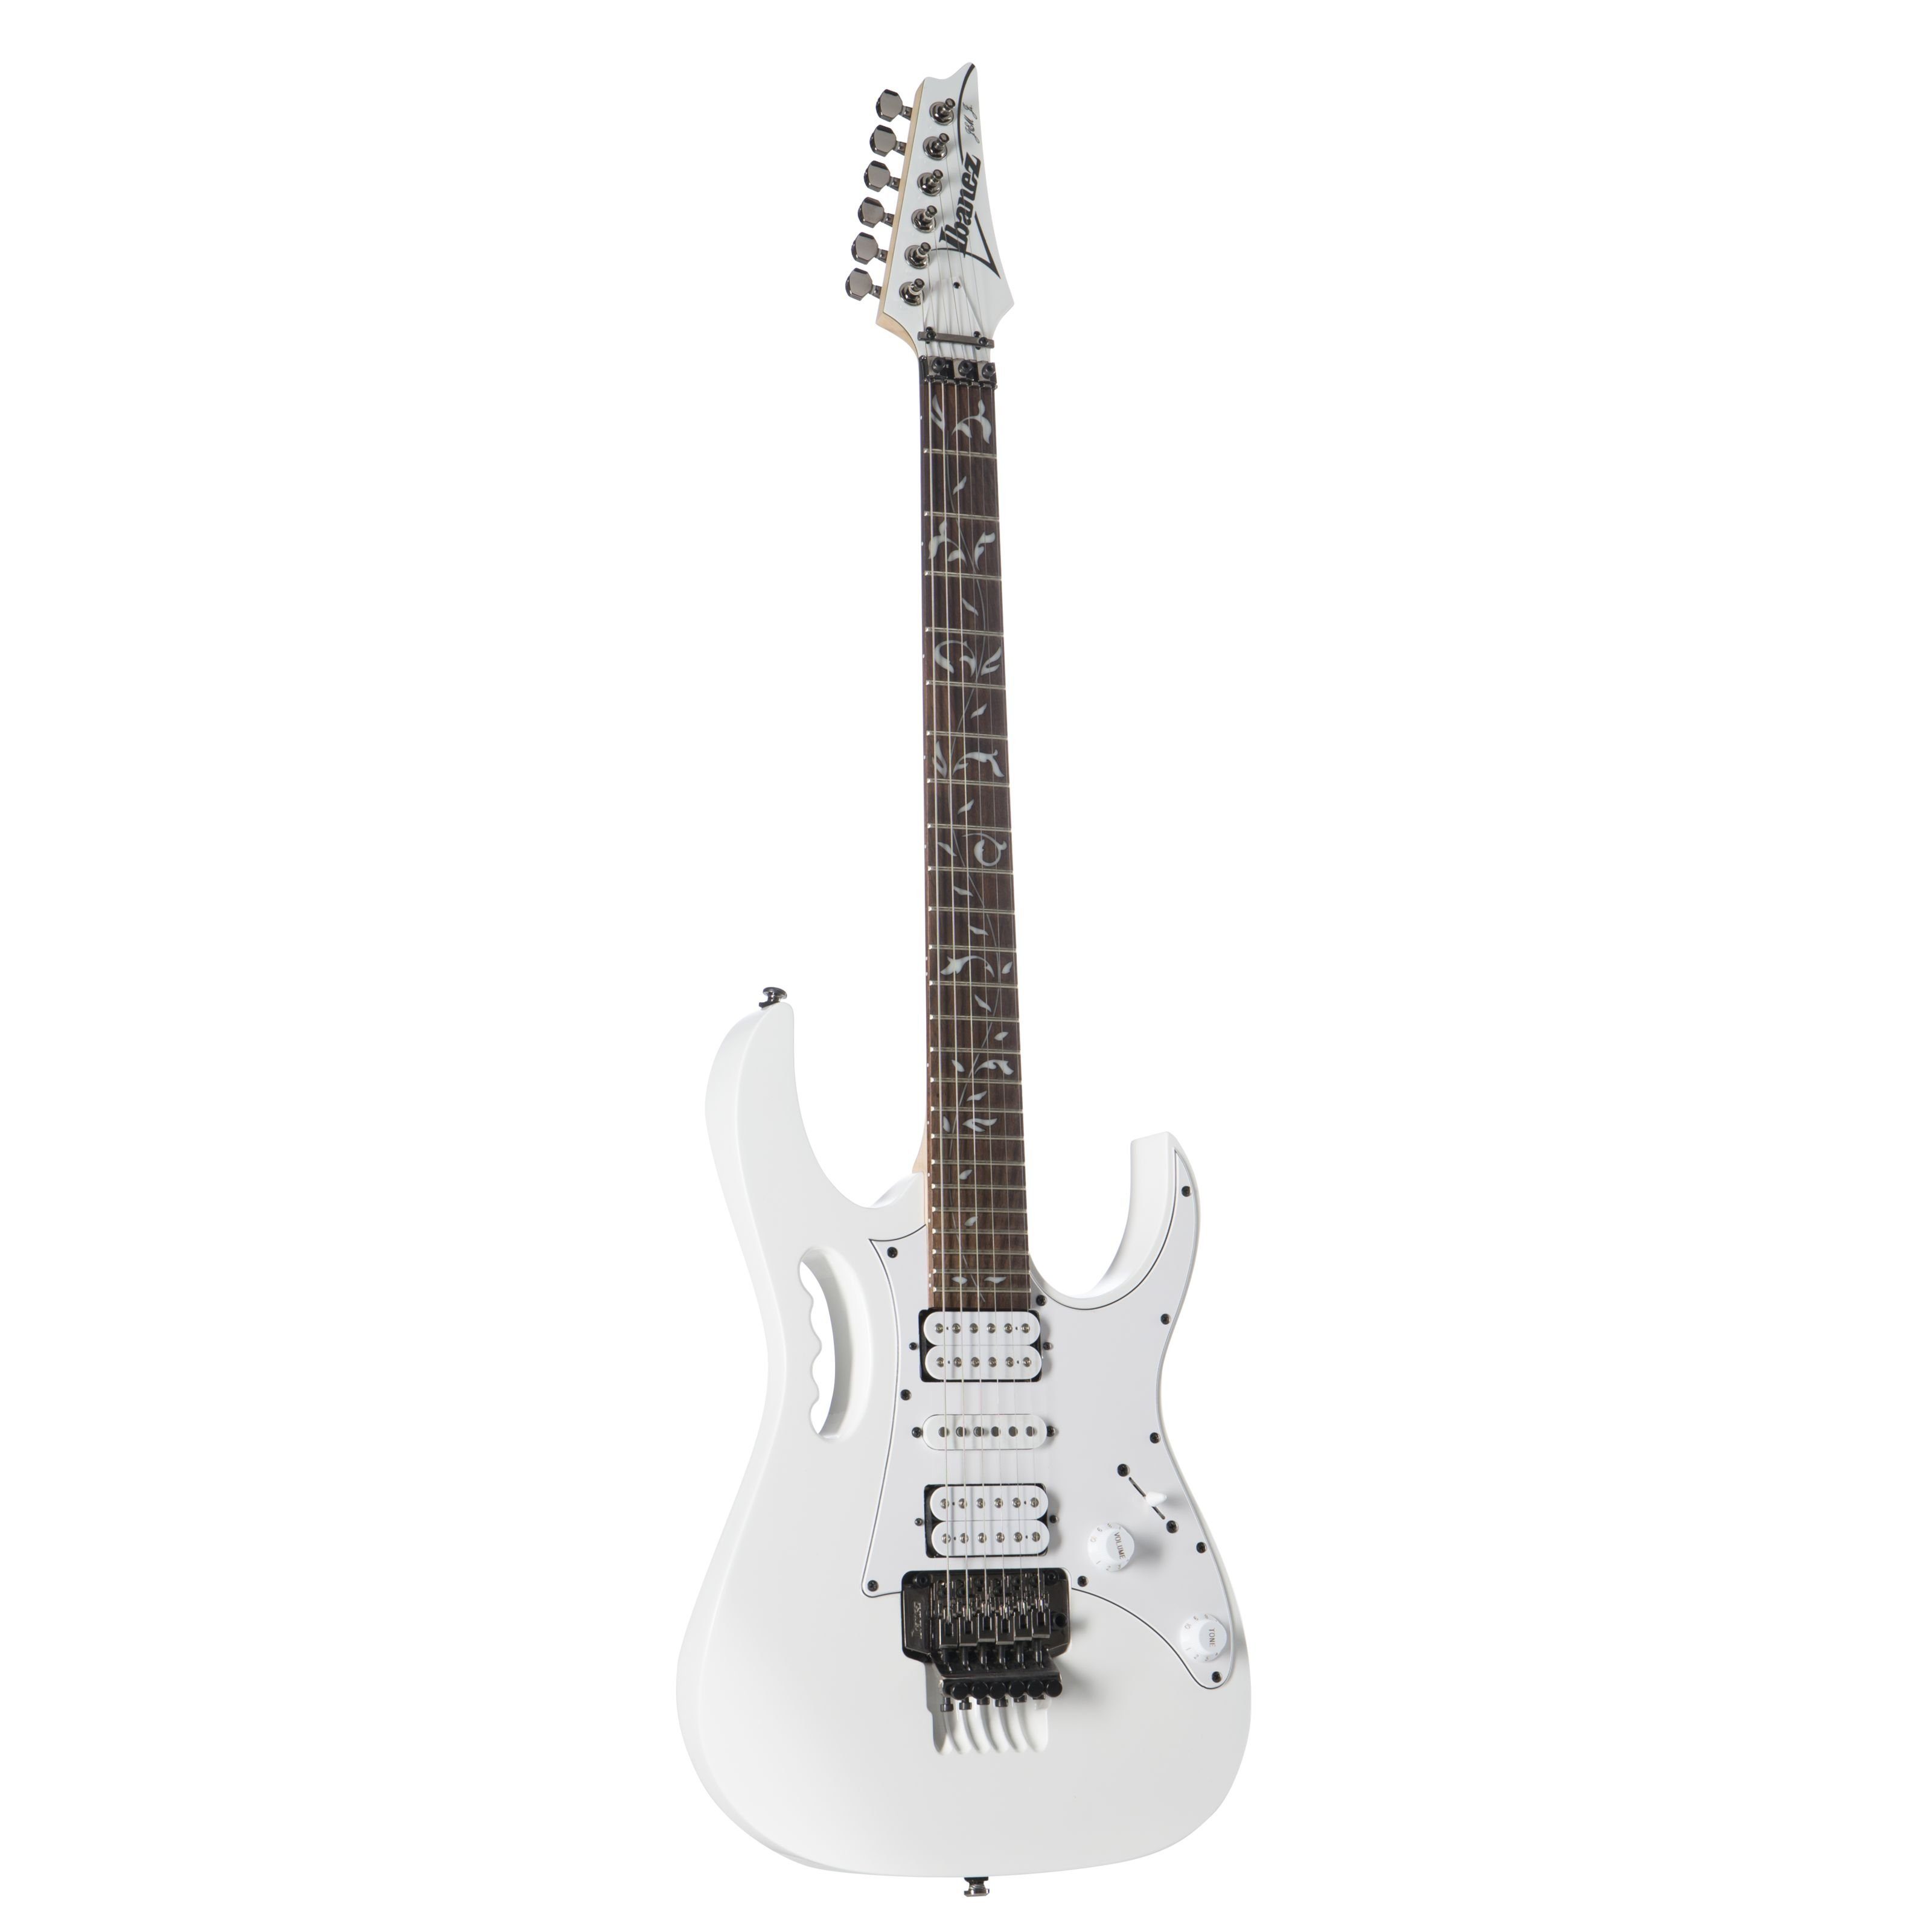 Ibanez E-Gitarre, JEMJR-WH Steve Vai Jem Jr. White, E-Gitarren, Ibanez Modelle, JEMJR-WH Steve Vai Jem Jr. White - E-Gitarre